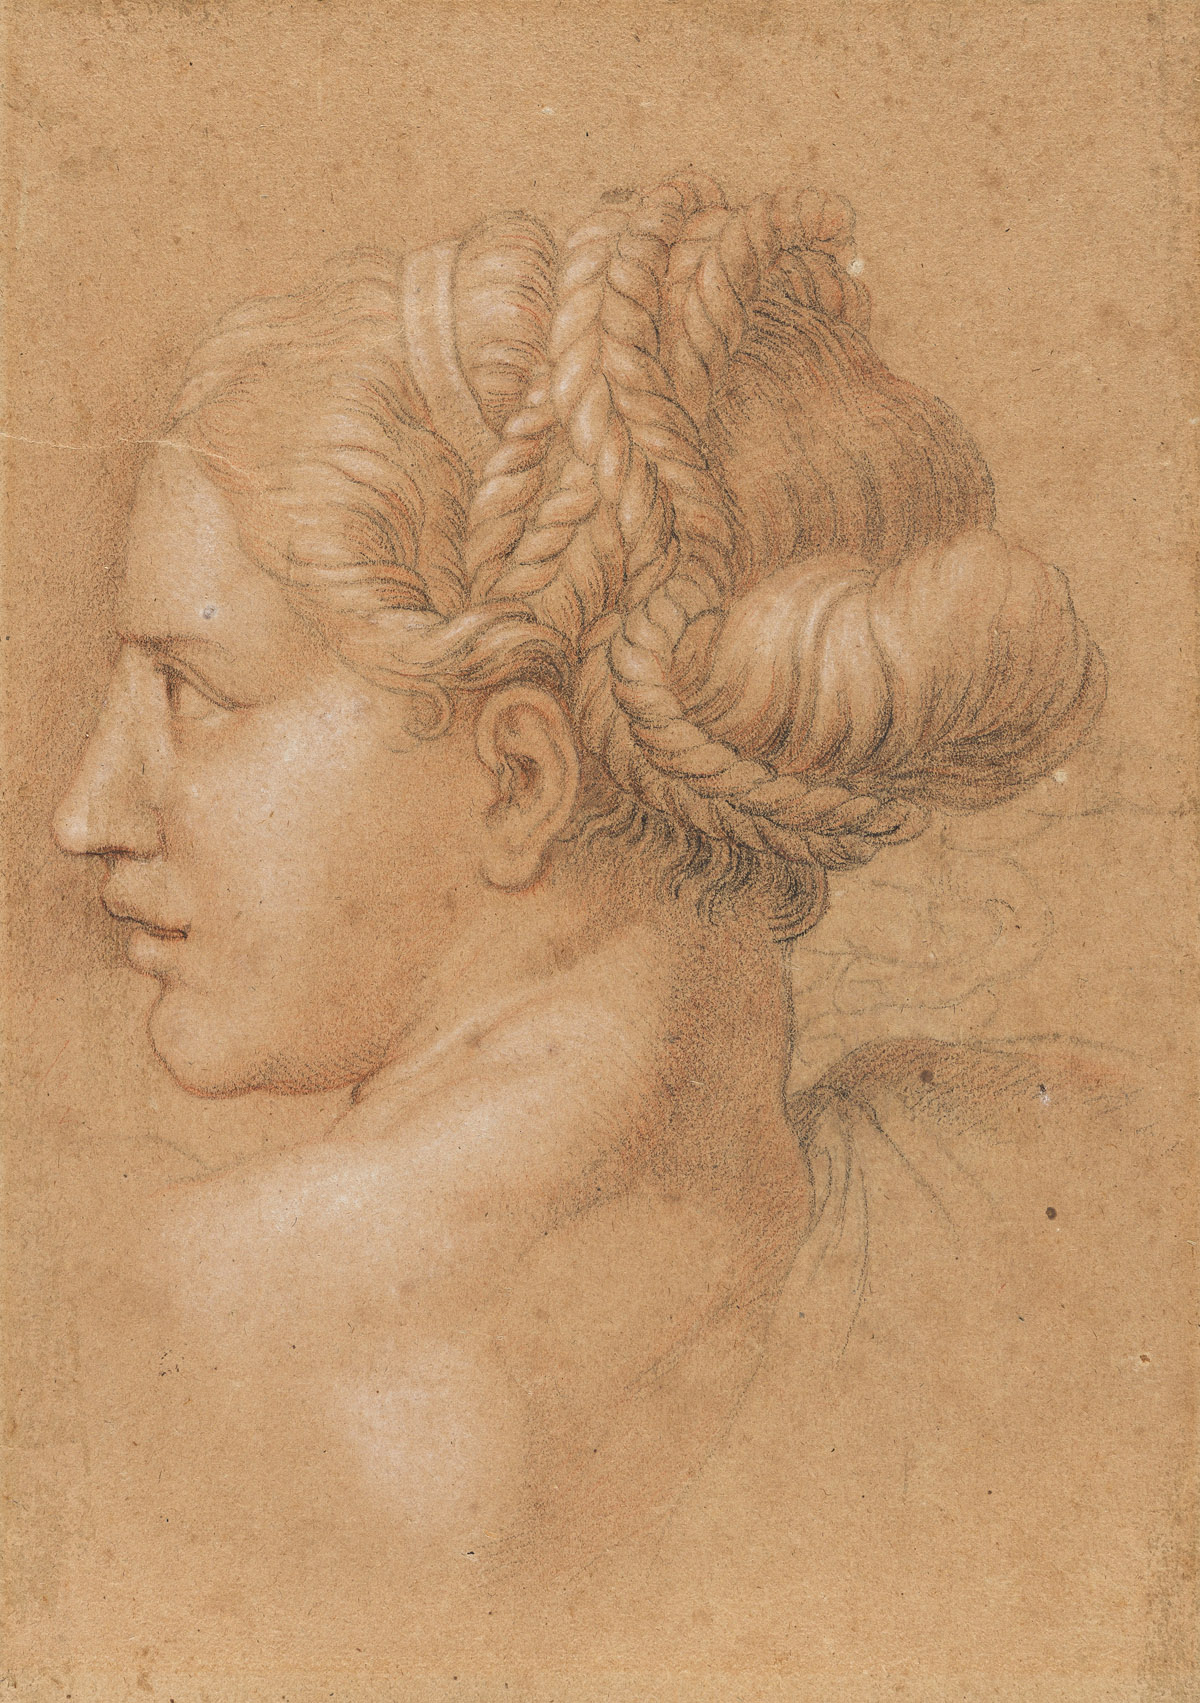 RAFFAELLO SANZIO DA URBINO (FOLLOWER OF) (Urbino 1483-1520 Rome) Study of a Female Head in Profile Looking Left.